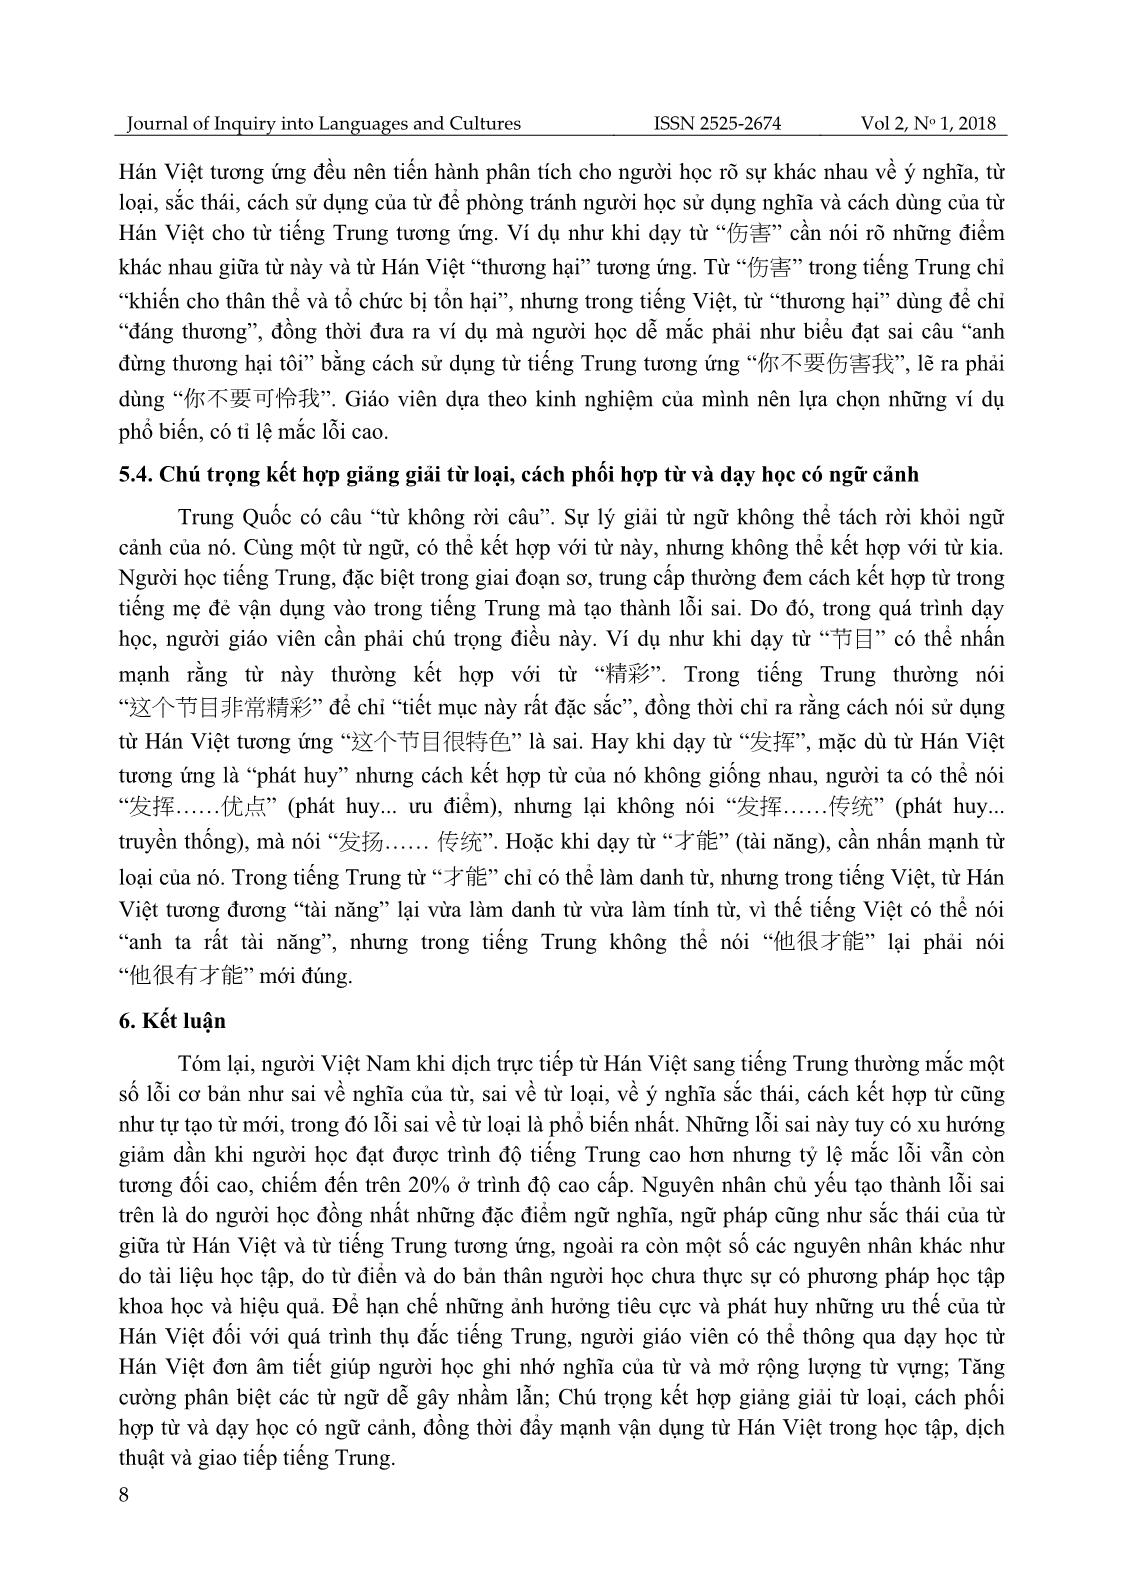 Khảo sát lỗi sai của sinh viên khoa Ngoại ngữ, Đại học Thái Nguyên khi dịch trực tiếp từ Hán Việt sang tiếng Trung và giải pháp khắc phục trang 8